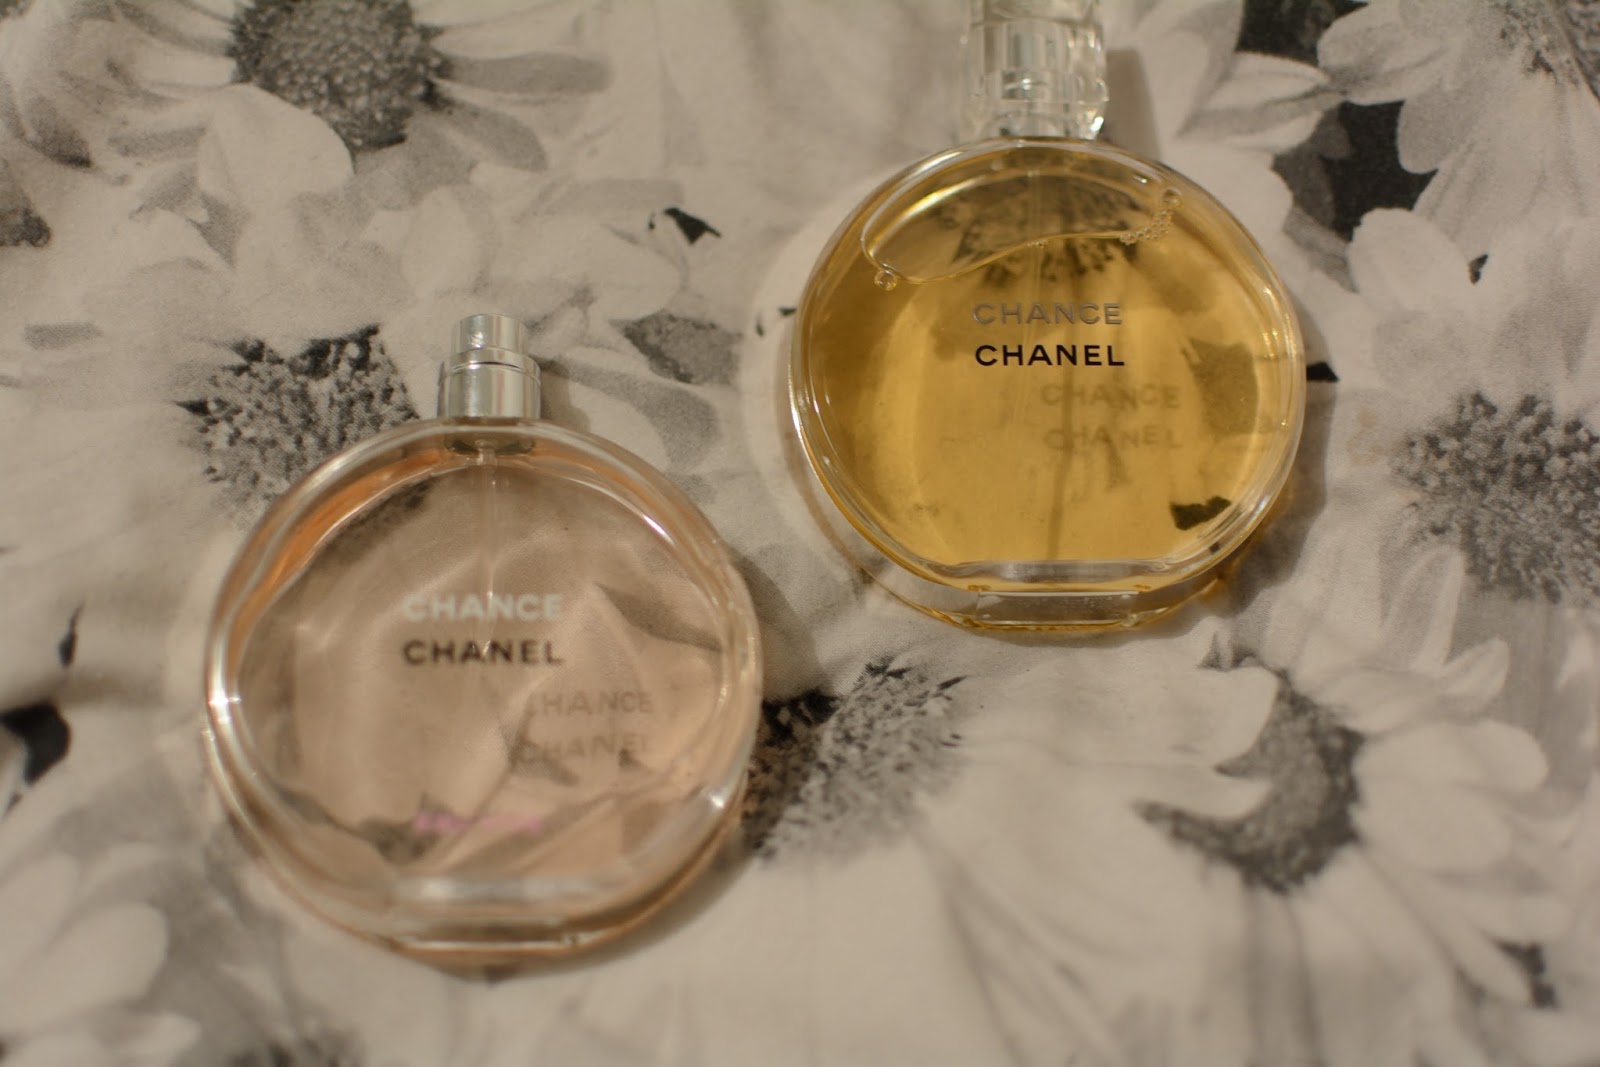 chance chanel perfume orange｜TikTok Search